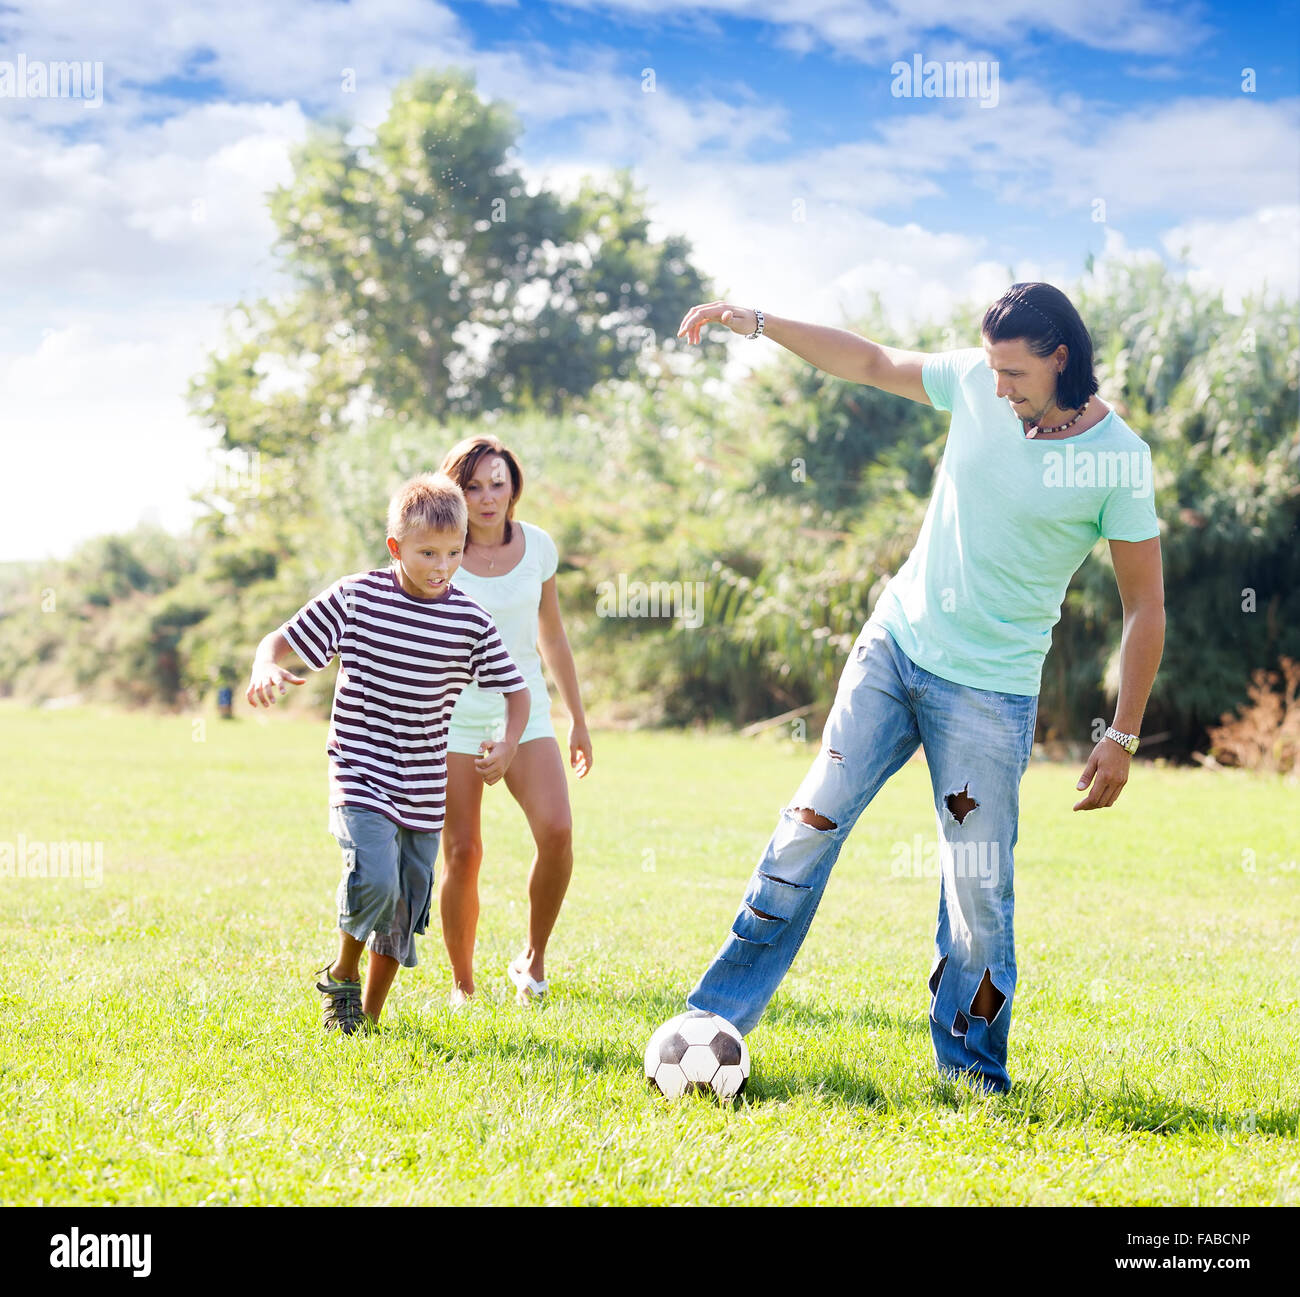 Glückliche Eltern mit Kind spielen mit Fußball im park Stockfoto